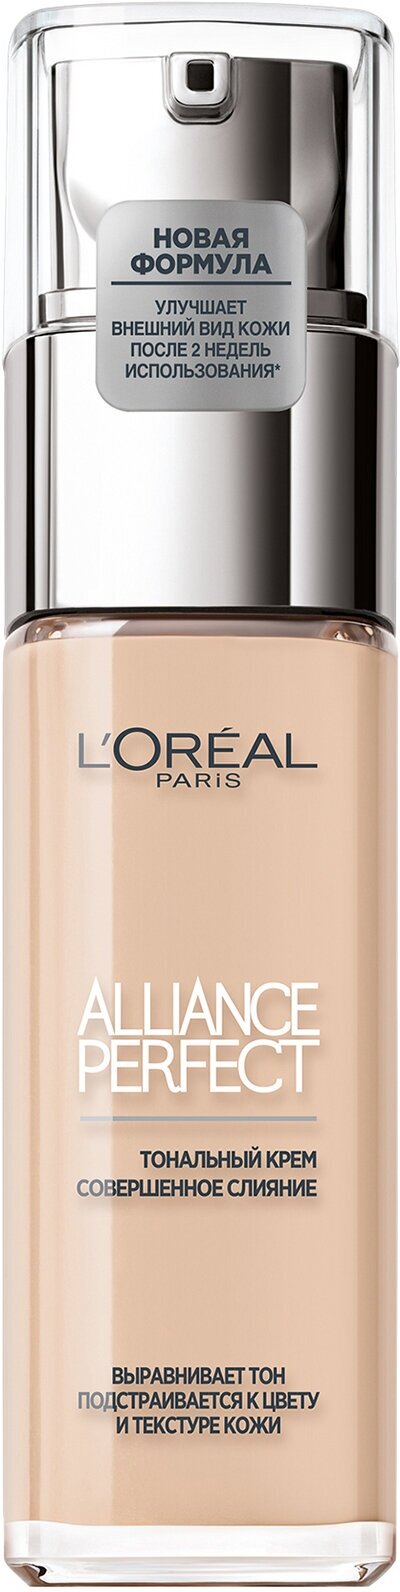 L'OREAL Тональный крем Alliance Perfect подстраивающийся к цвету и текстуре кожи, 30 мл, 0.5N